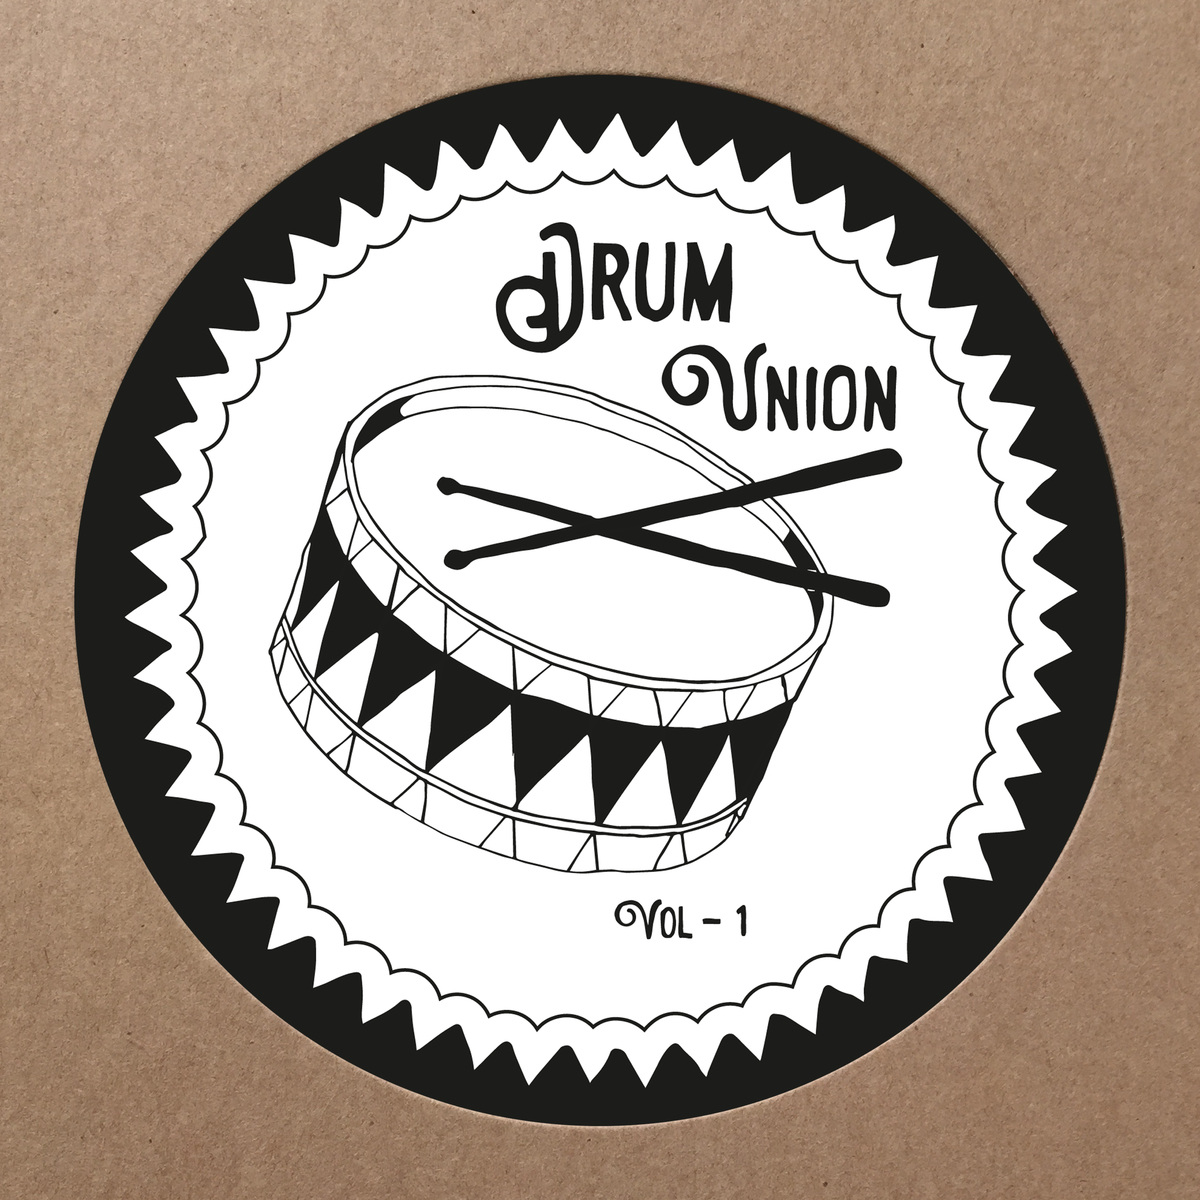 VA - Drum Union, Vol. 1 / Drumpoet Community